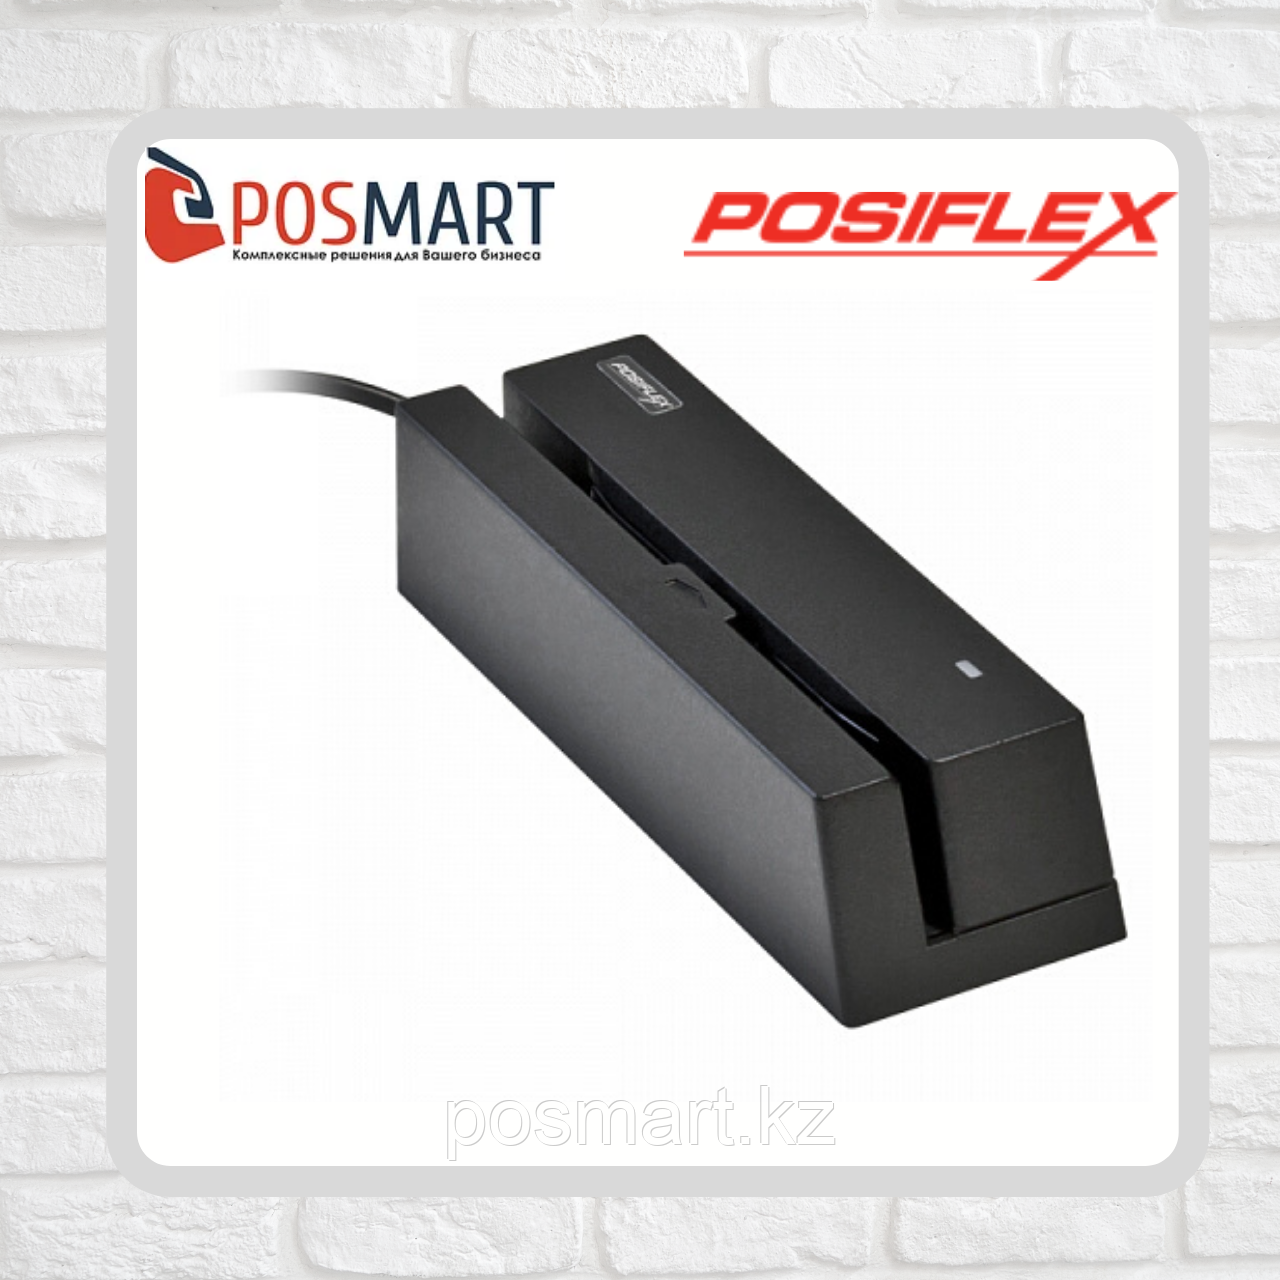 Настольный считыватель магнитных карт Posiflex MR-2106 USB, фото 1